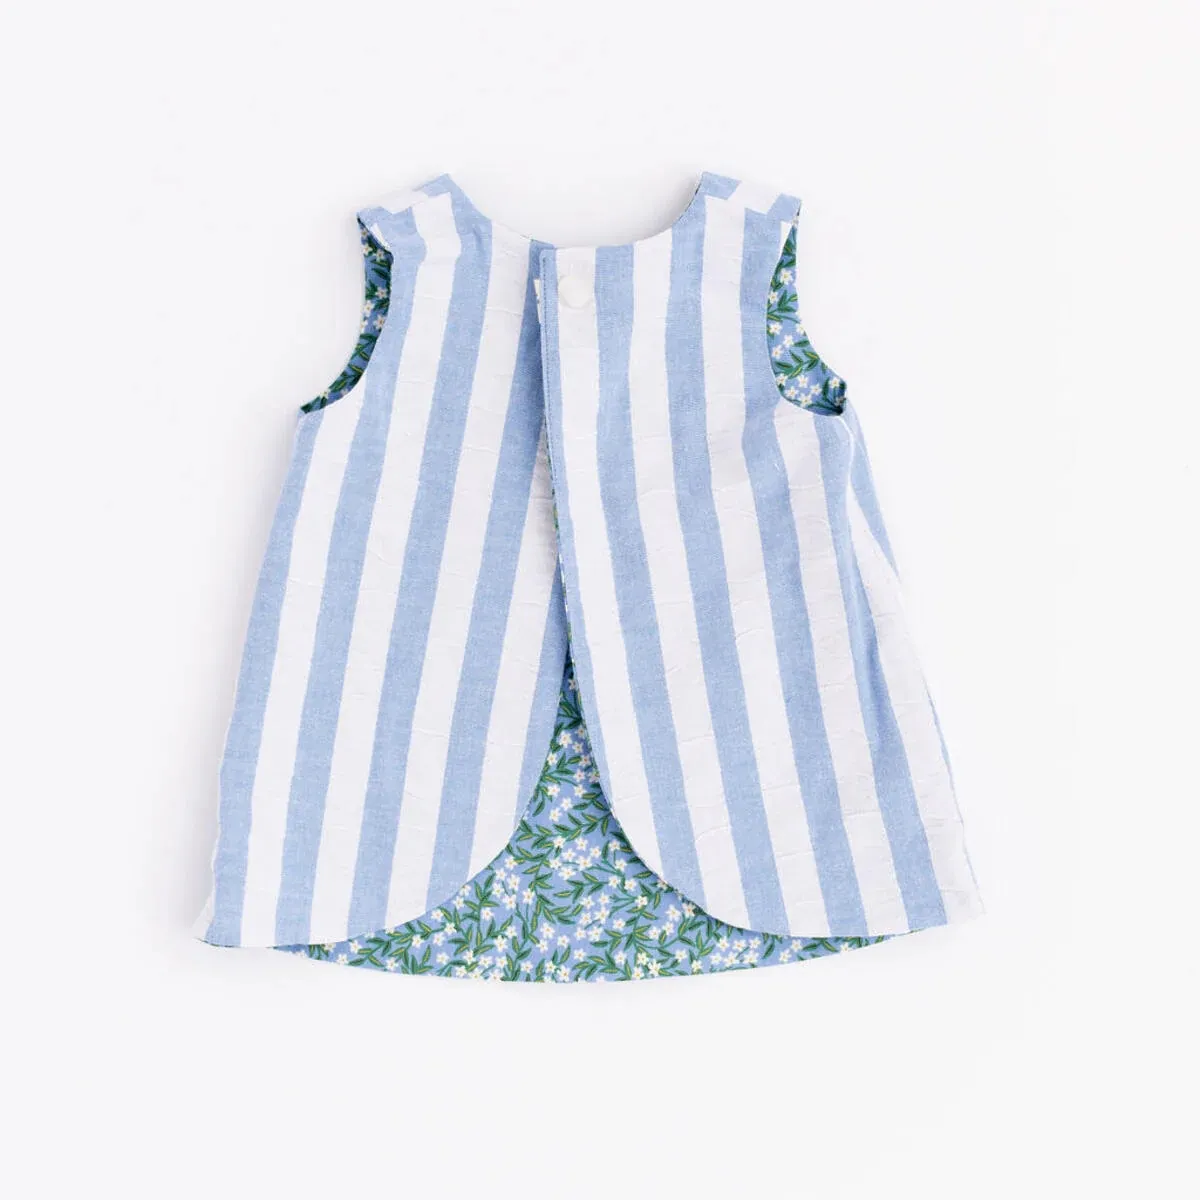 Reversible Bloom Stripe Cotton Tank Blouse Toddler Girls Kids Designed Tops Shirts